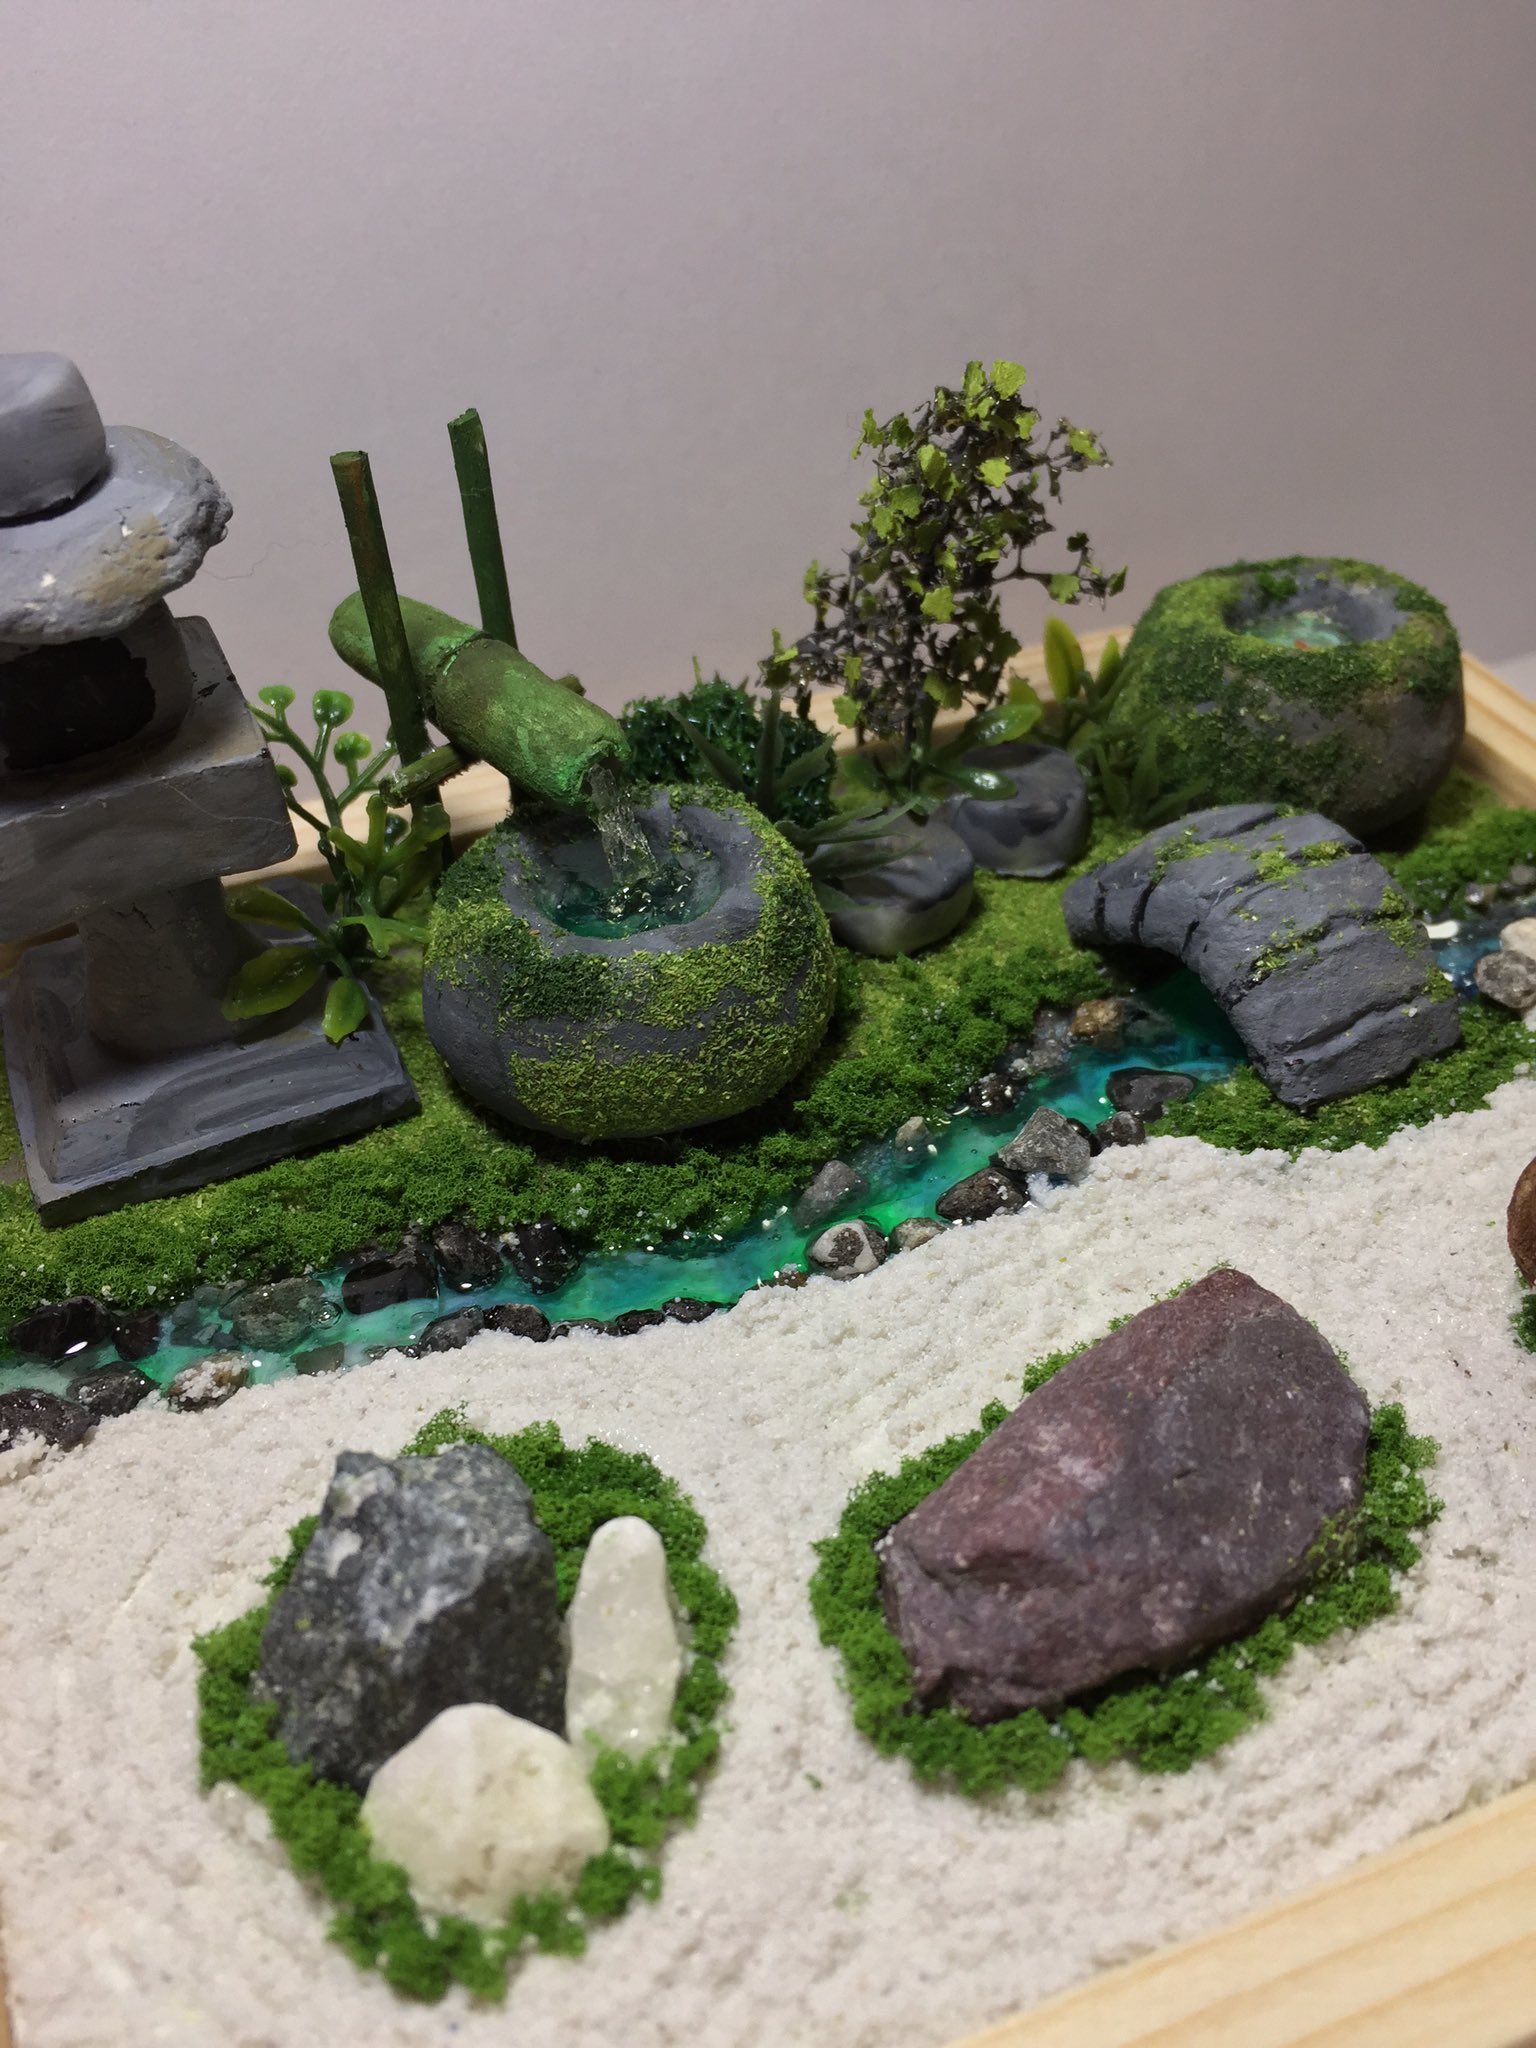 Fumi 先週の瀬川先生のジオラマ教室 日本庭園 の復習で 日本庭園 作ってみました やはり枯山水の石の模様が難しかったです 流れる水の音が聞こえてくるといいなぁ 秋葉原工作室 ジオラマ教室 日本庭園 枯山水 ミニチュア